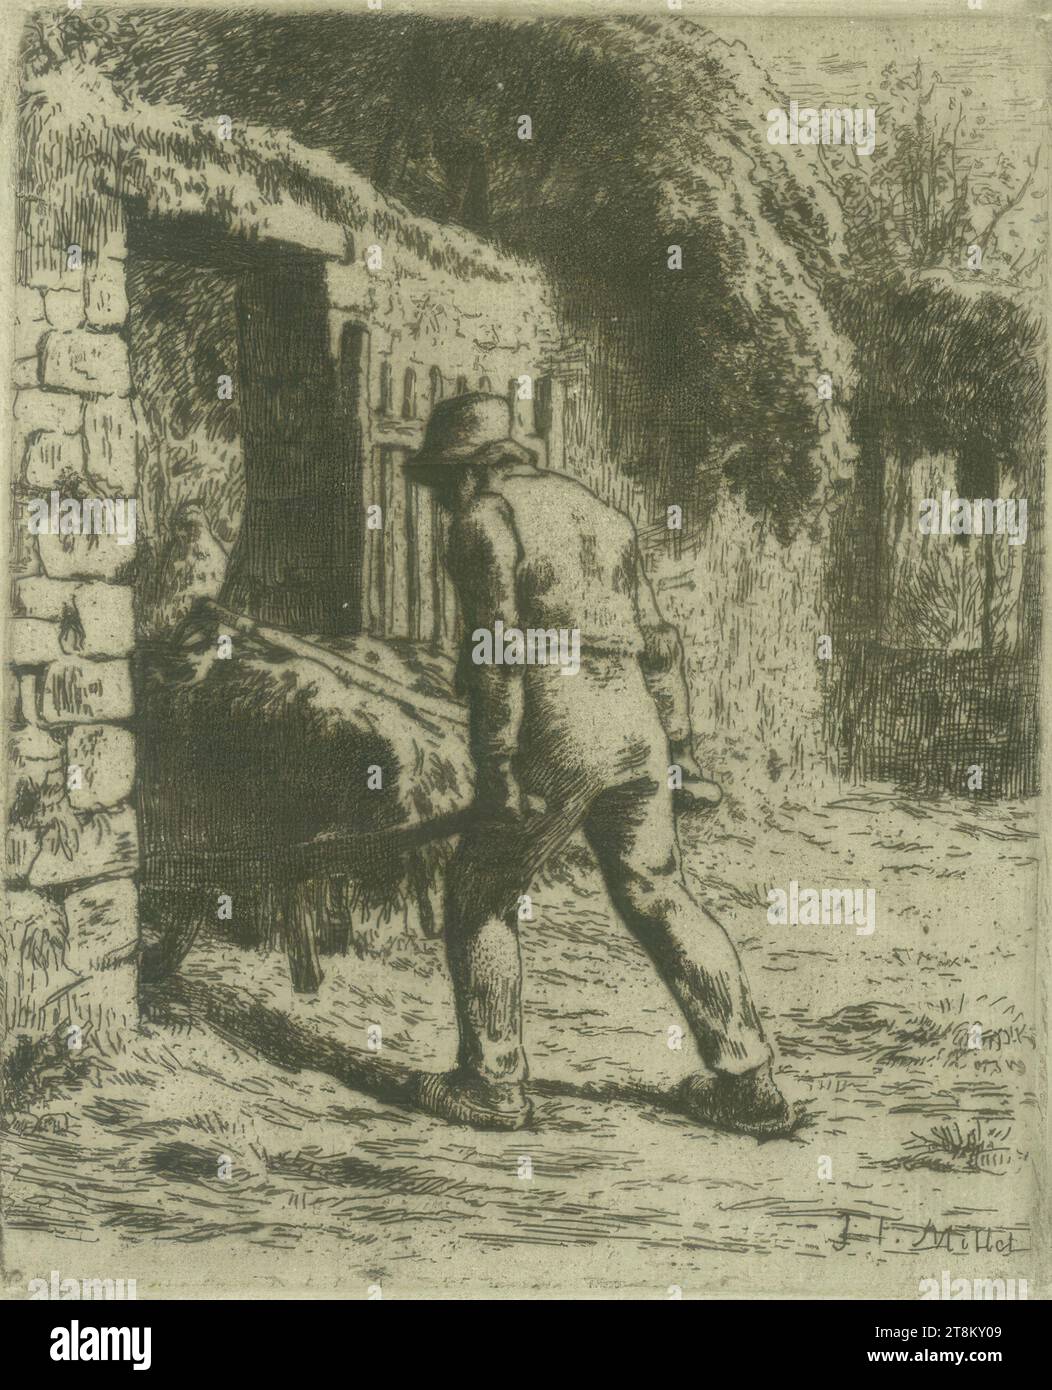 Le paysan rentrant du fumier, Jean-François Millet, Gruchy near Gréville 1814 - 1875 Barbizon, 1855, print, etching Stock Photo